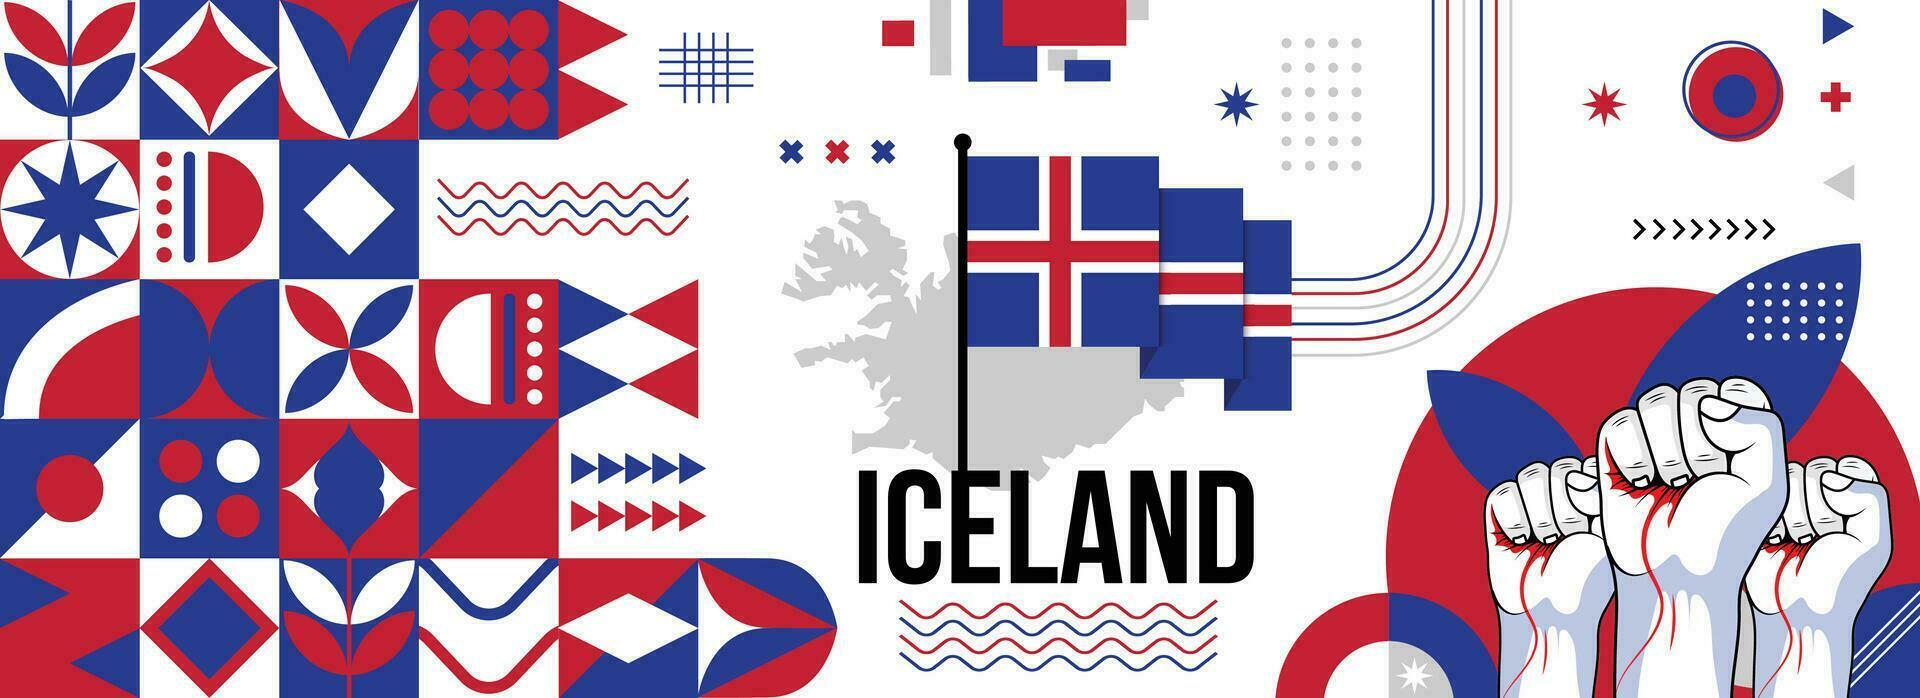 Islanda nazionale o indipendenza giorno bandiera per nazione celebrazione. bandiera e carta geografica di islandesi con sollevato pugni. moderno retrò design con typorgaphy astratto geometrico icone. vettore illustrazione